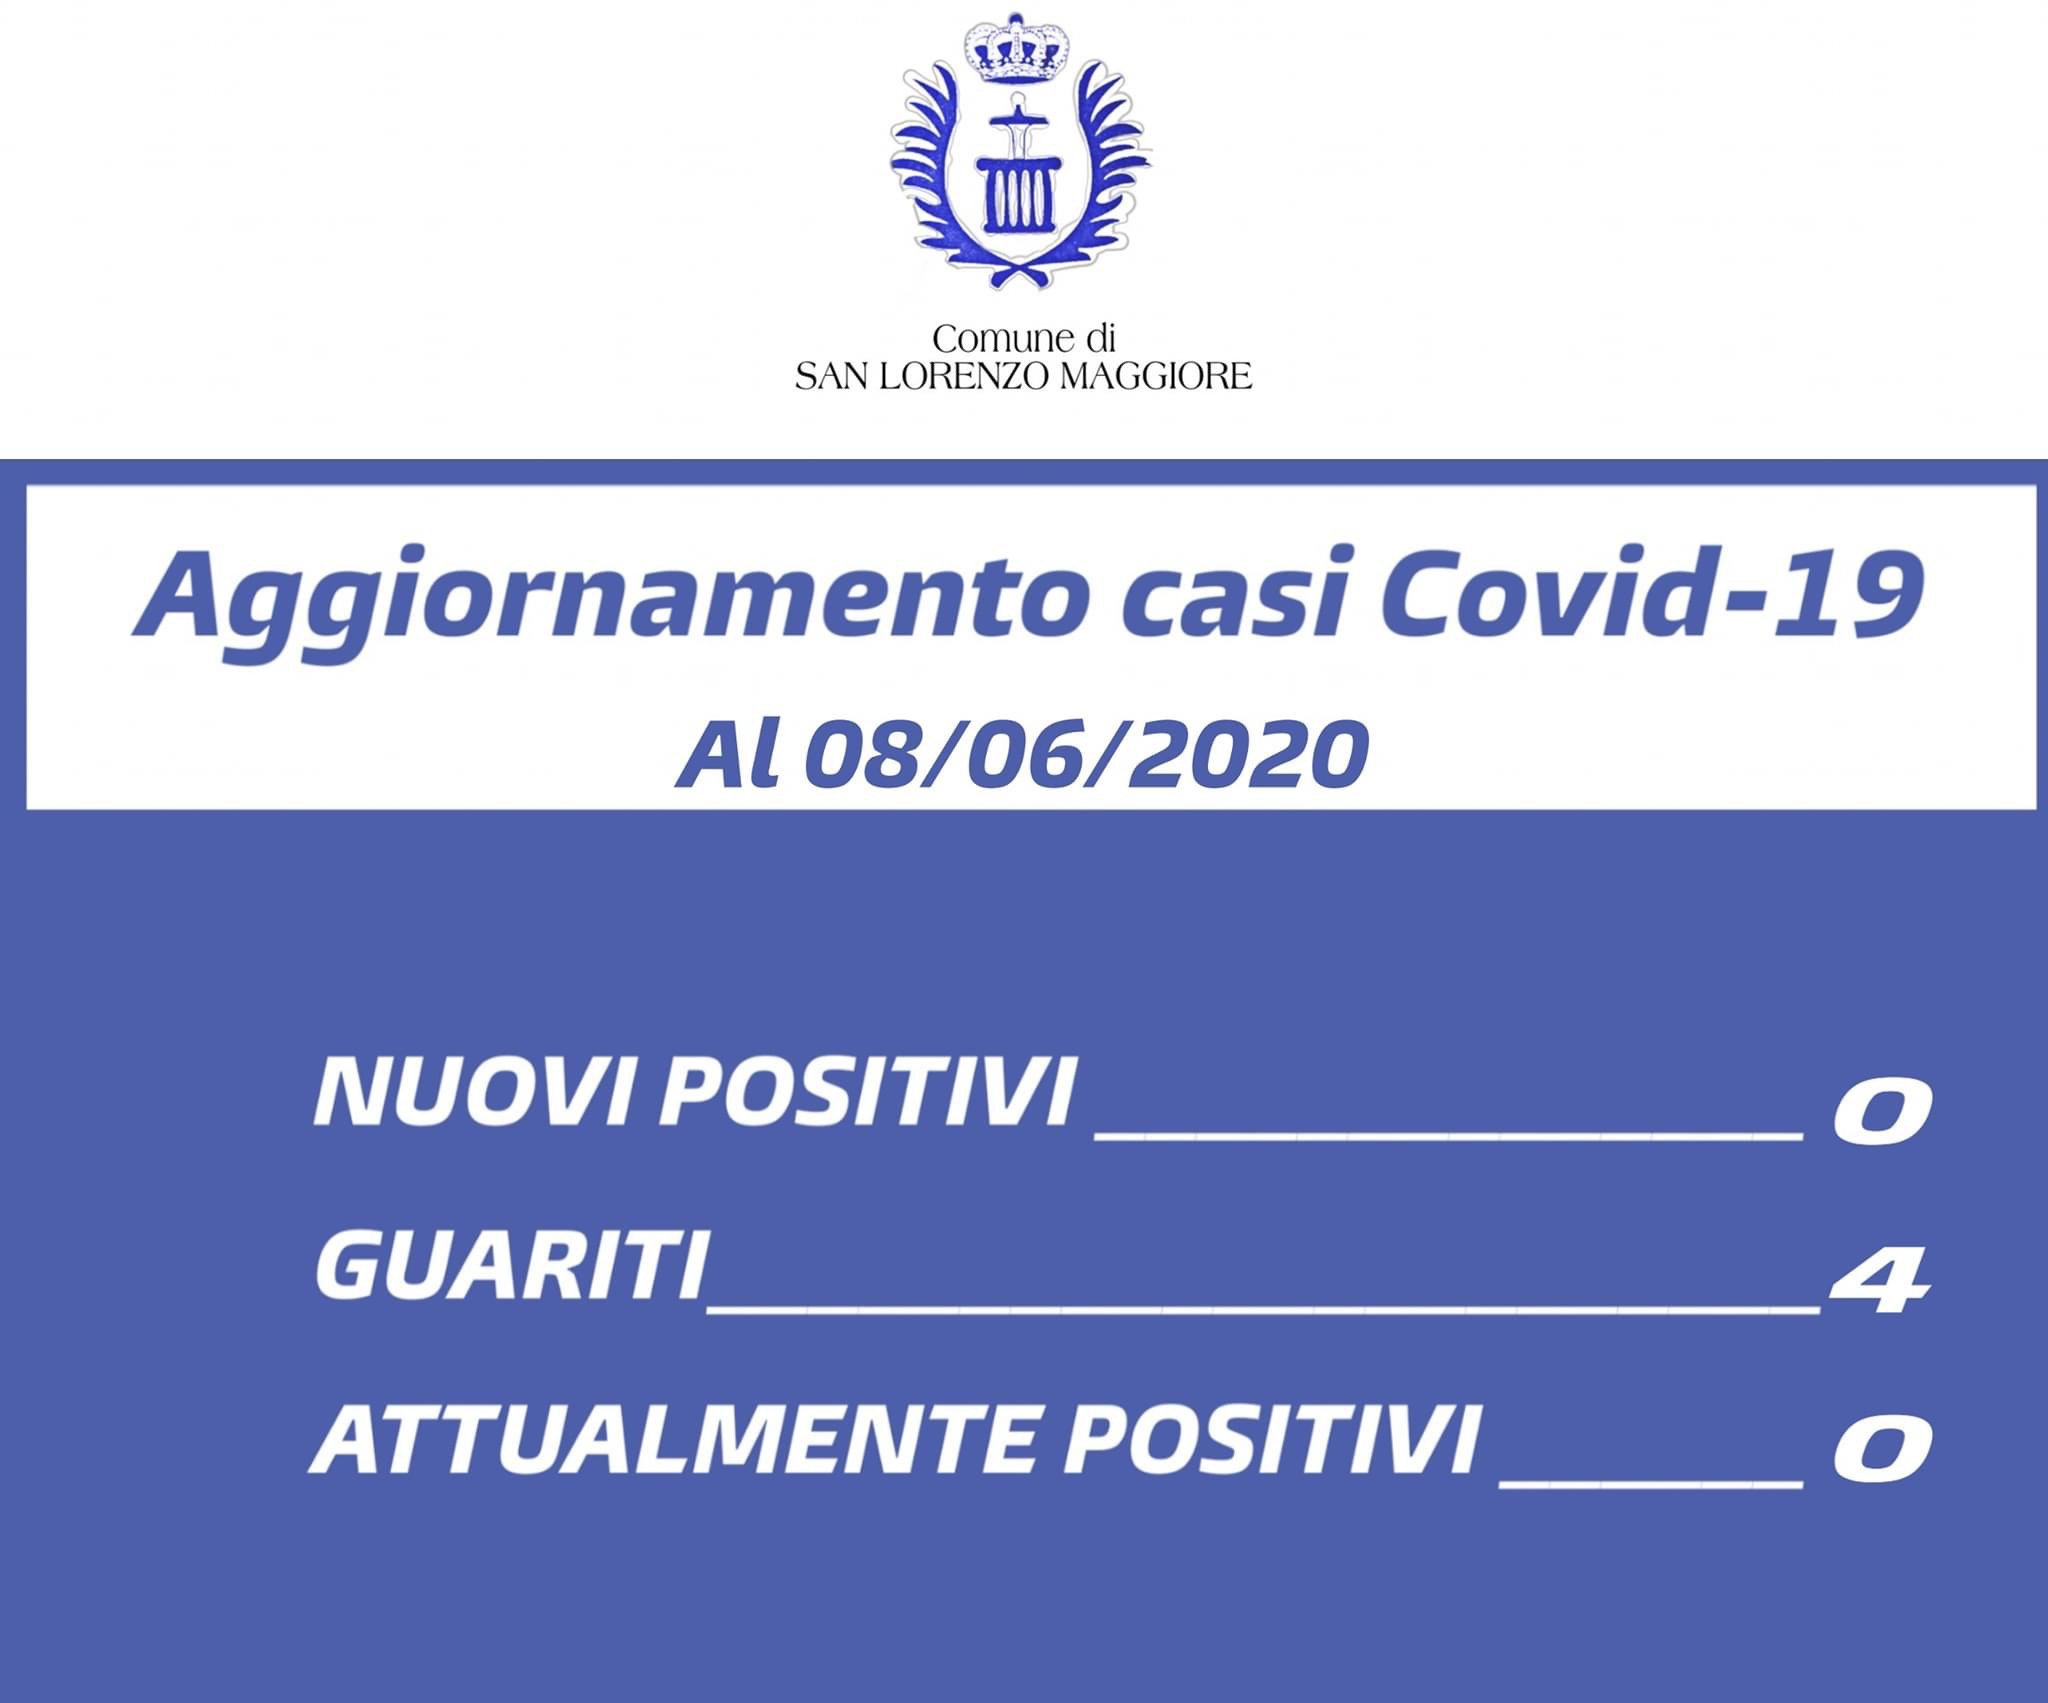 San Lorenzo Maggiore “Covid free”: guarita l’ultima persona positiva